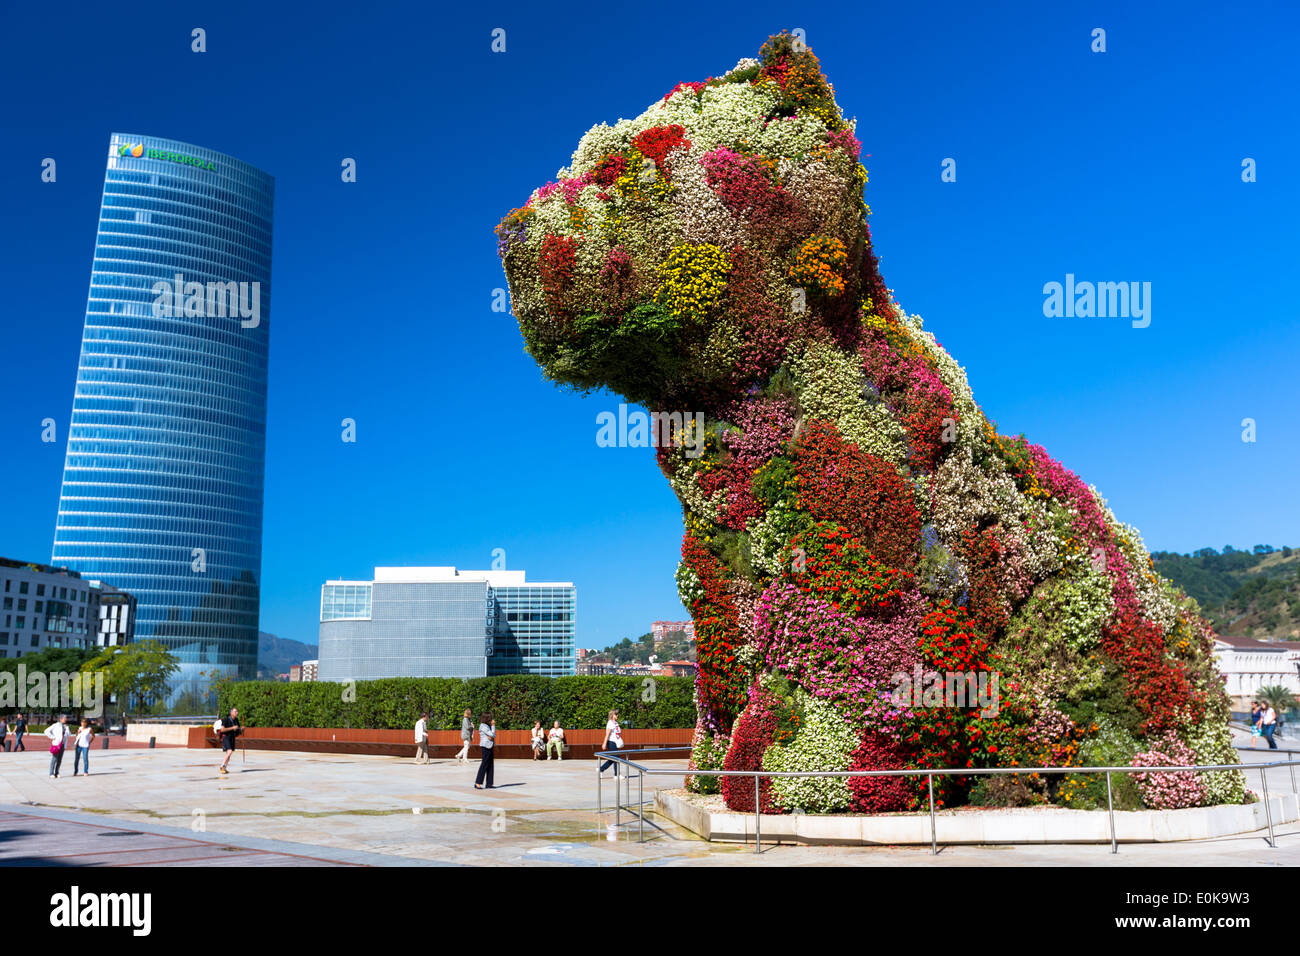 La fleur de chiot présente l'art floral sous forme de chien par Jeff Koons au musée Guggenheim, Tour Iberdrola, Bilbao, Espagne Banque D'Images